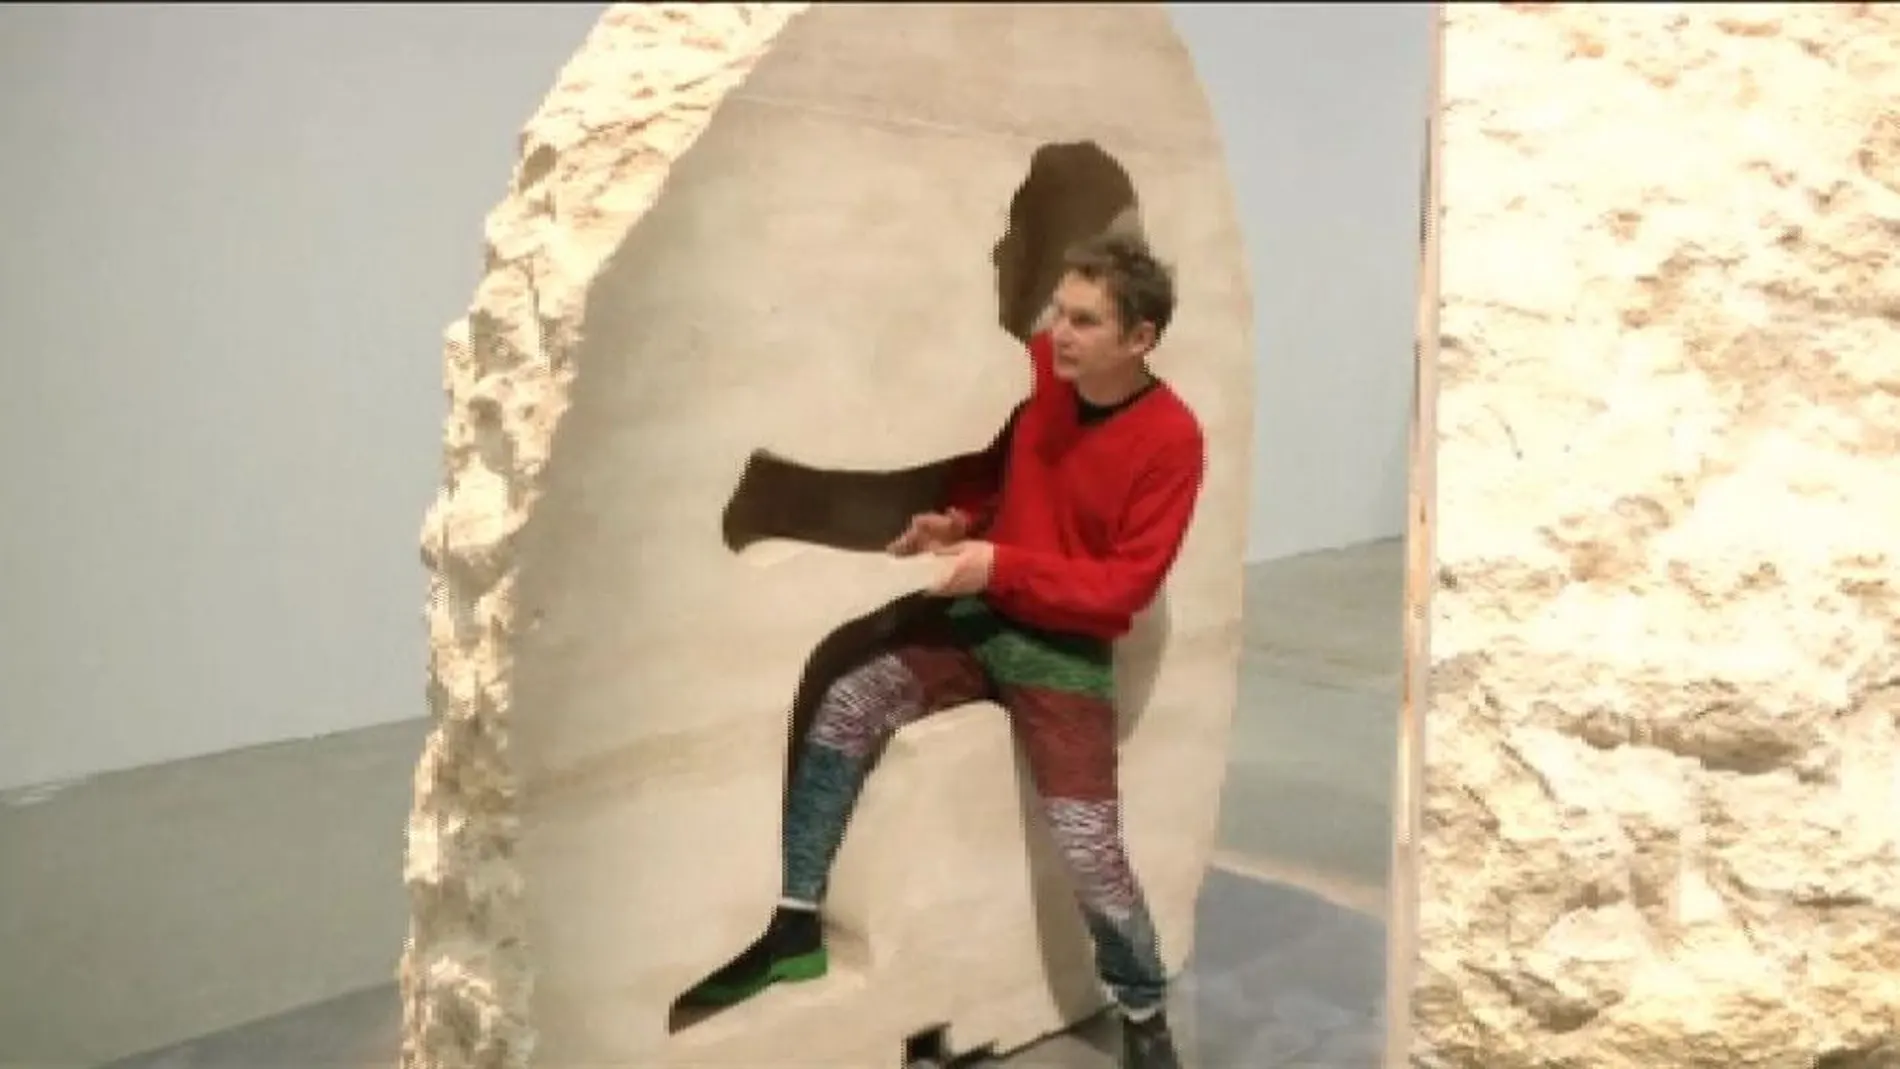 Un artista francés pasará una semana encerrado en el interior de una roca